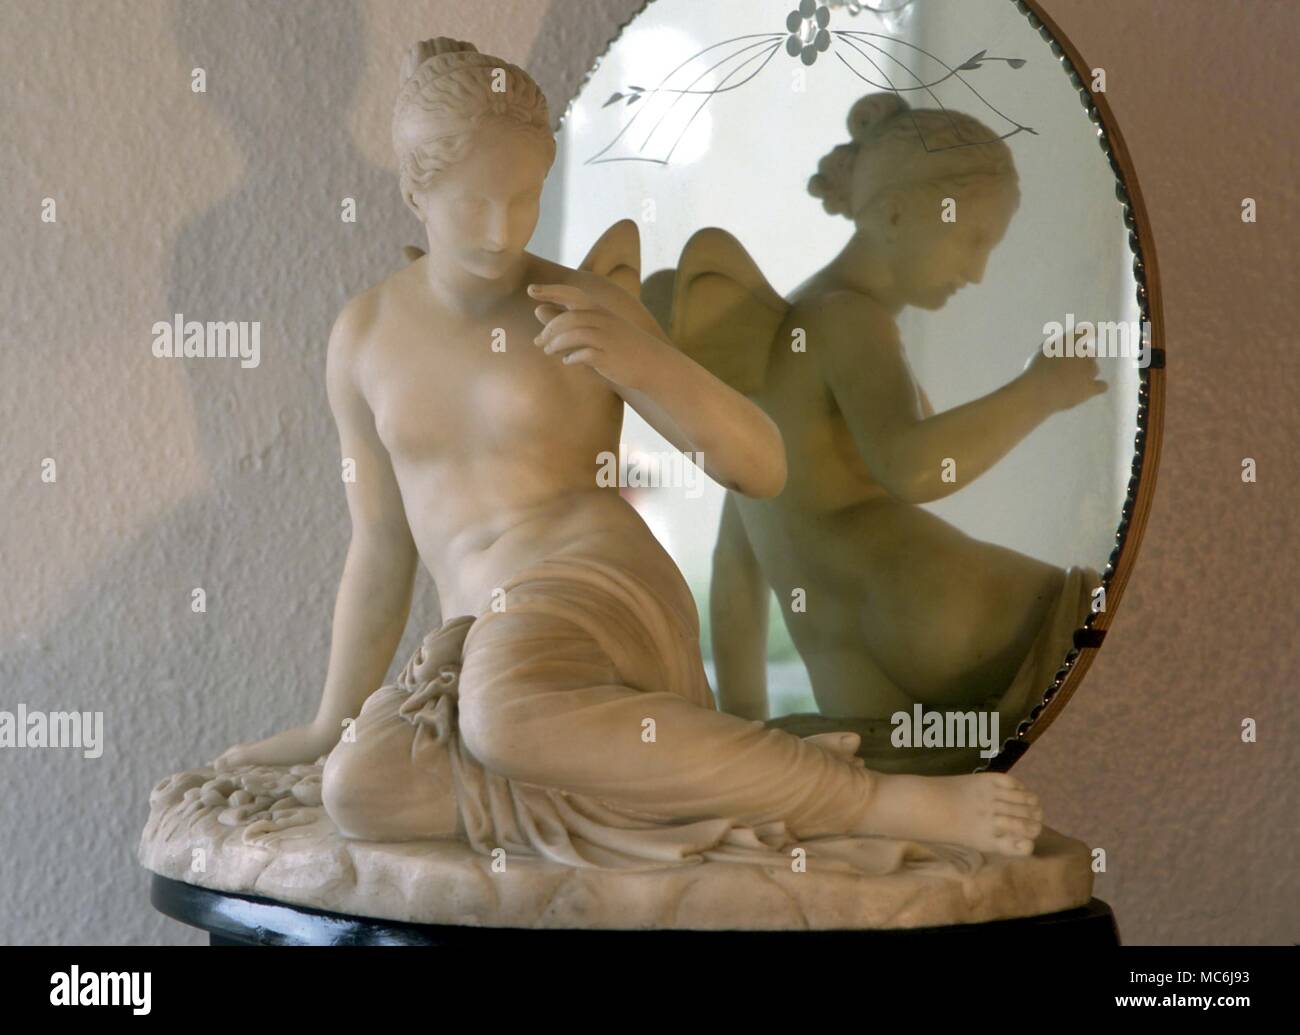 Des fées. Statue en marbre d'une fée ailée - dans le style de Canova, sculpteur mais inconnu. Collection privée Banque D'Images